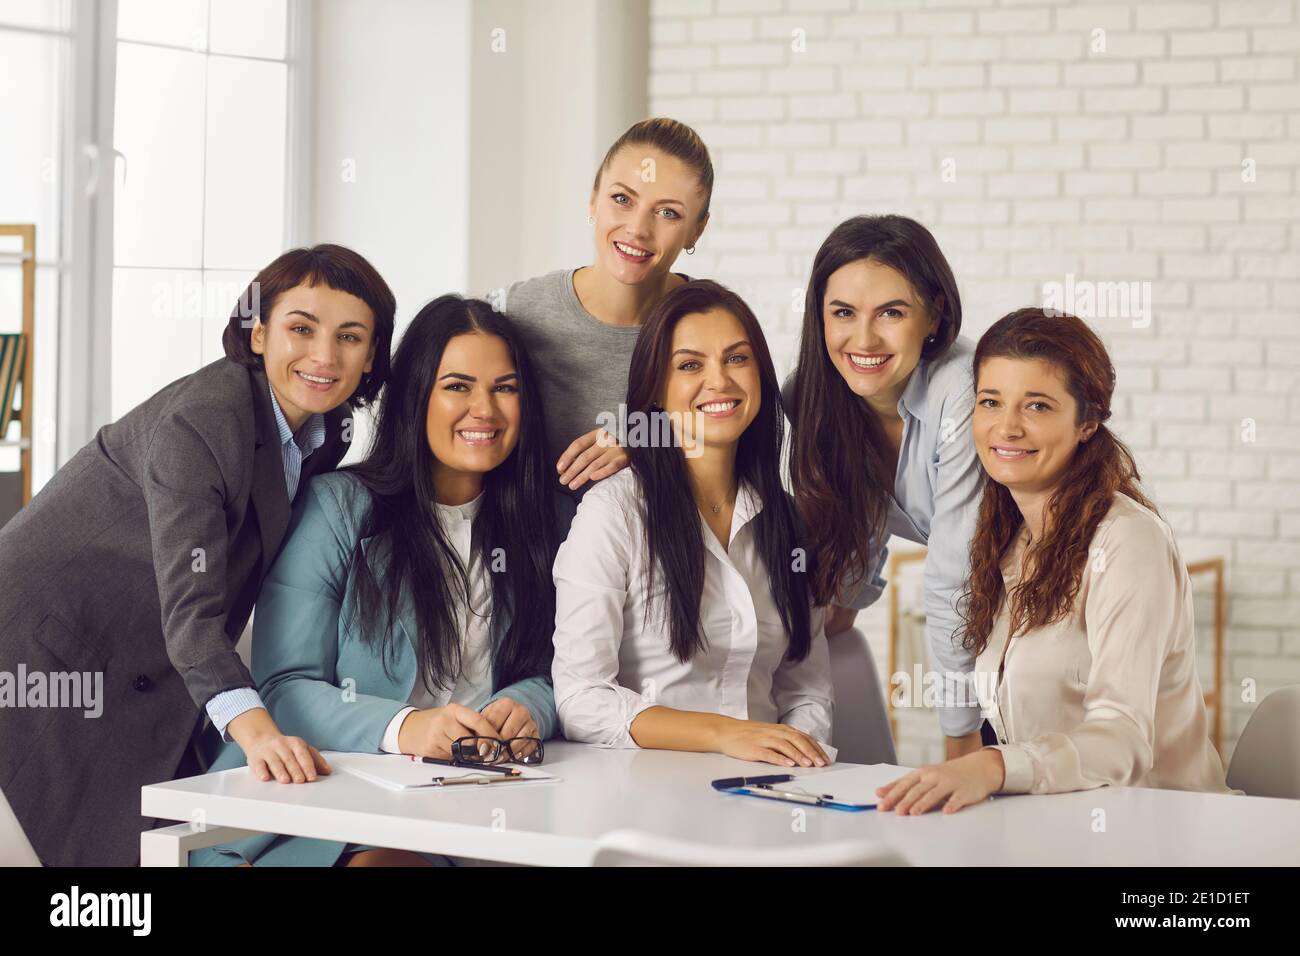 Gruppenportrait von glücklichen jungen Geschäftsfrauen, die vor der Kamera lächeln Während der Bürobesprechung Stockfoto